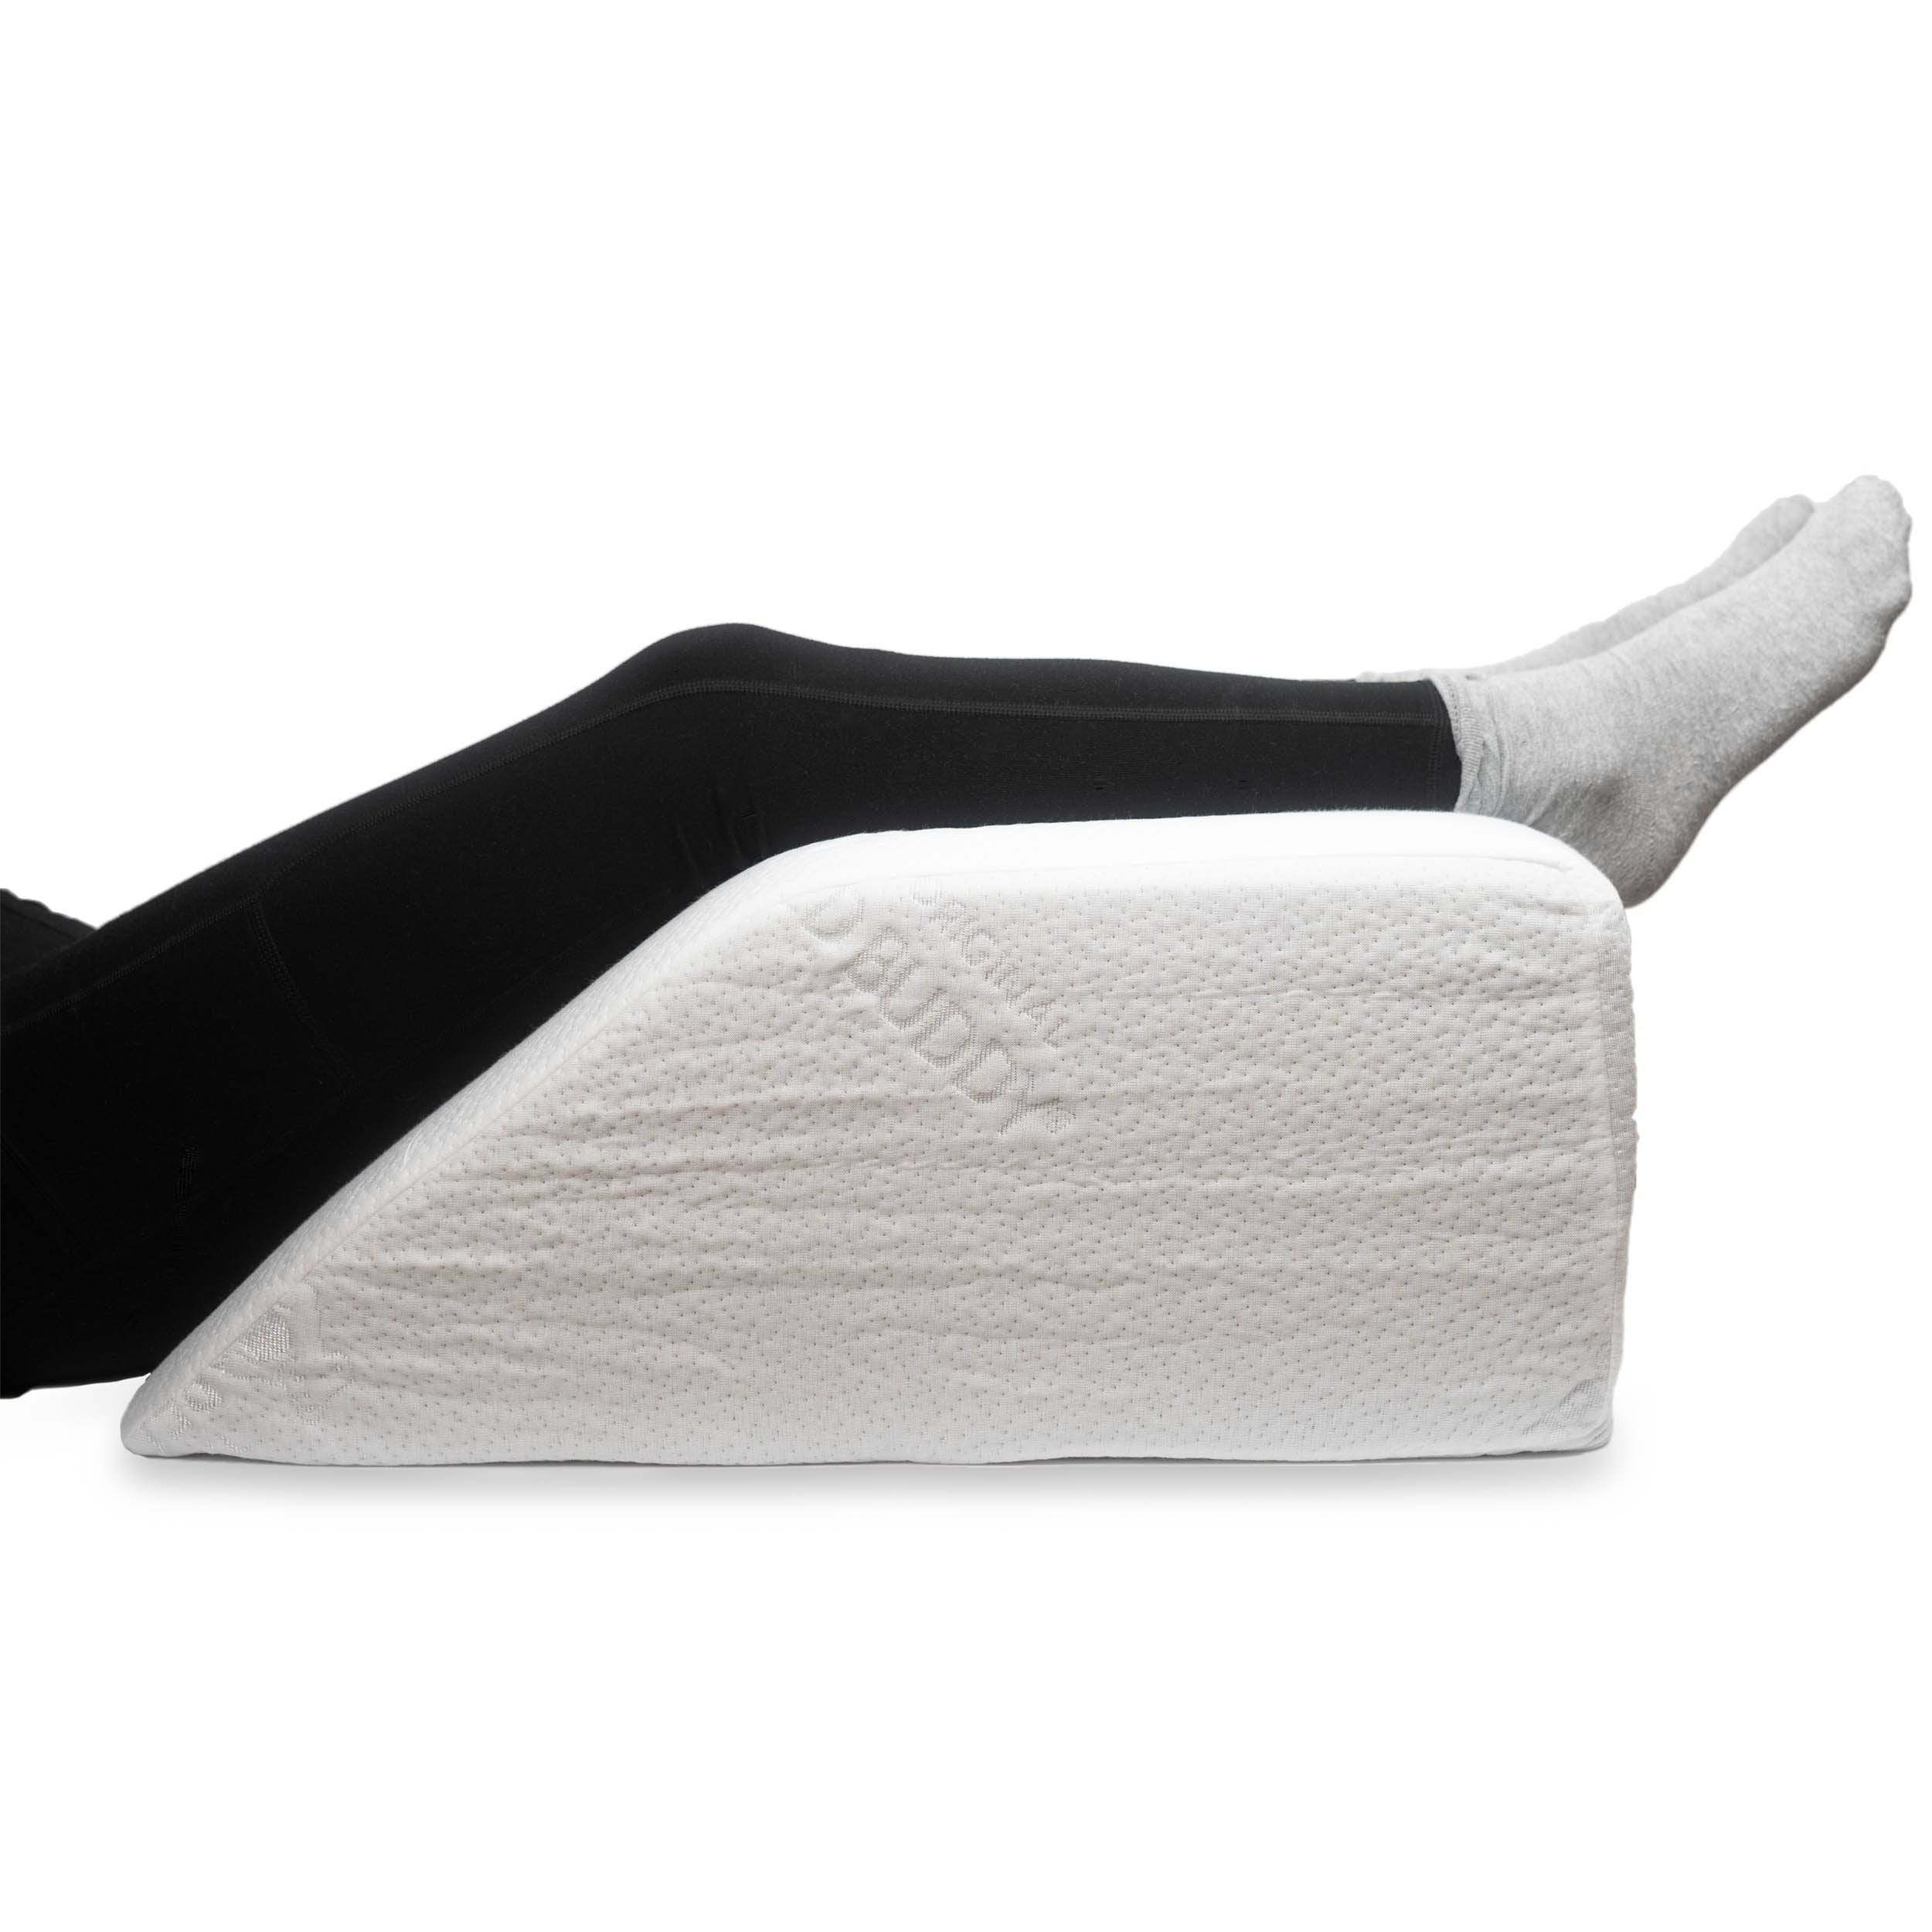 Leg Elevation Pillow for Leg/Knee Surgery Recovery, Memory Foam Leg Support  Pill